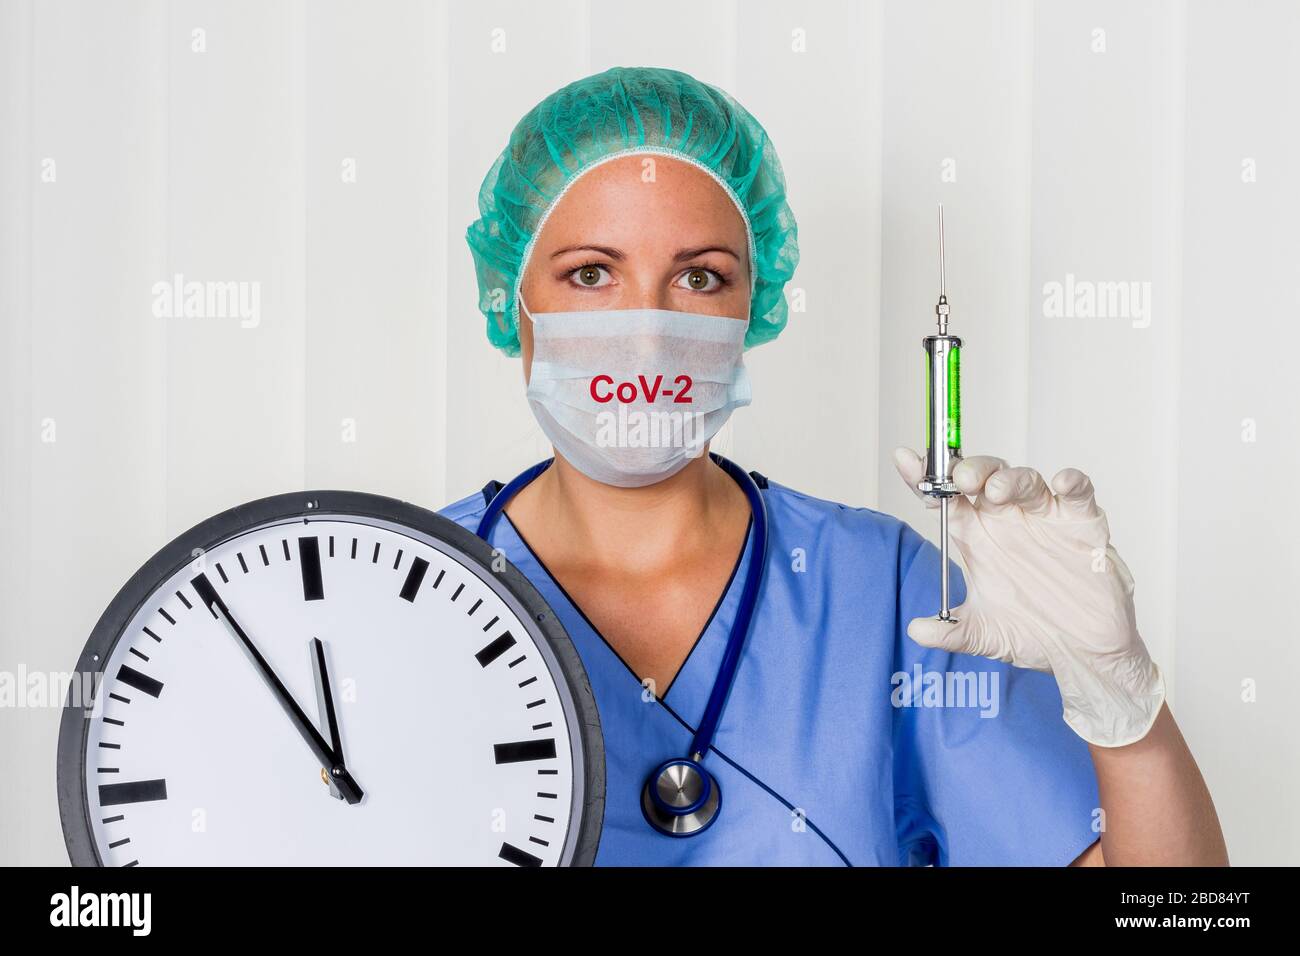 Chirurgie-Doktor in Srubs, mit einer Uhr, 5 vor 12, Coronavirus Pandemie Stockfoto